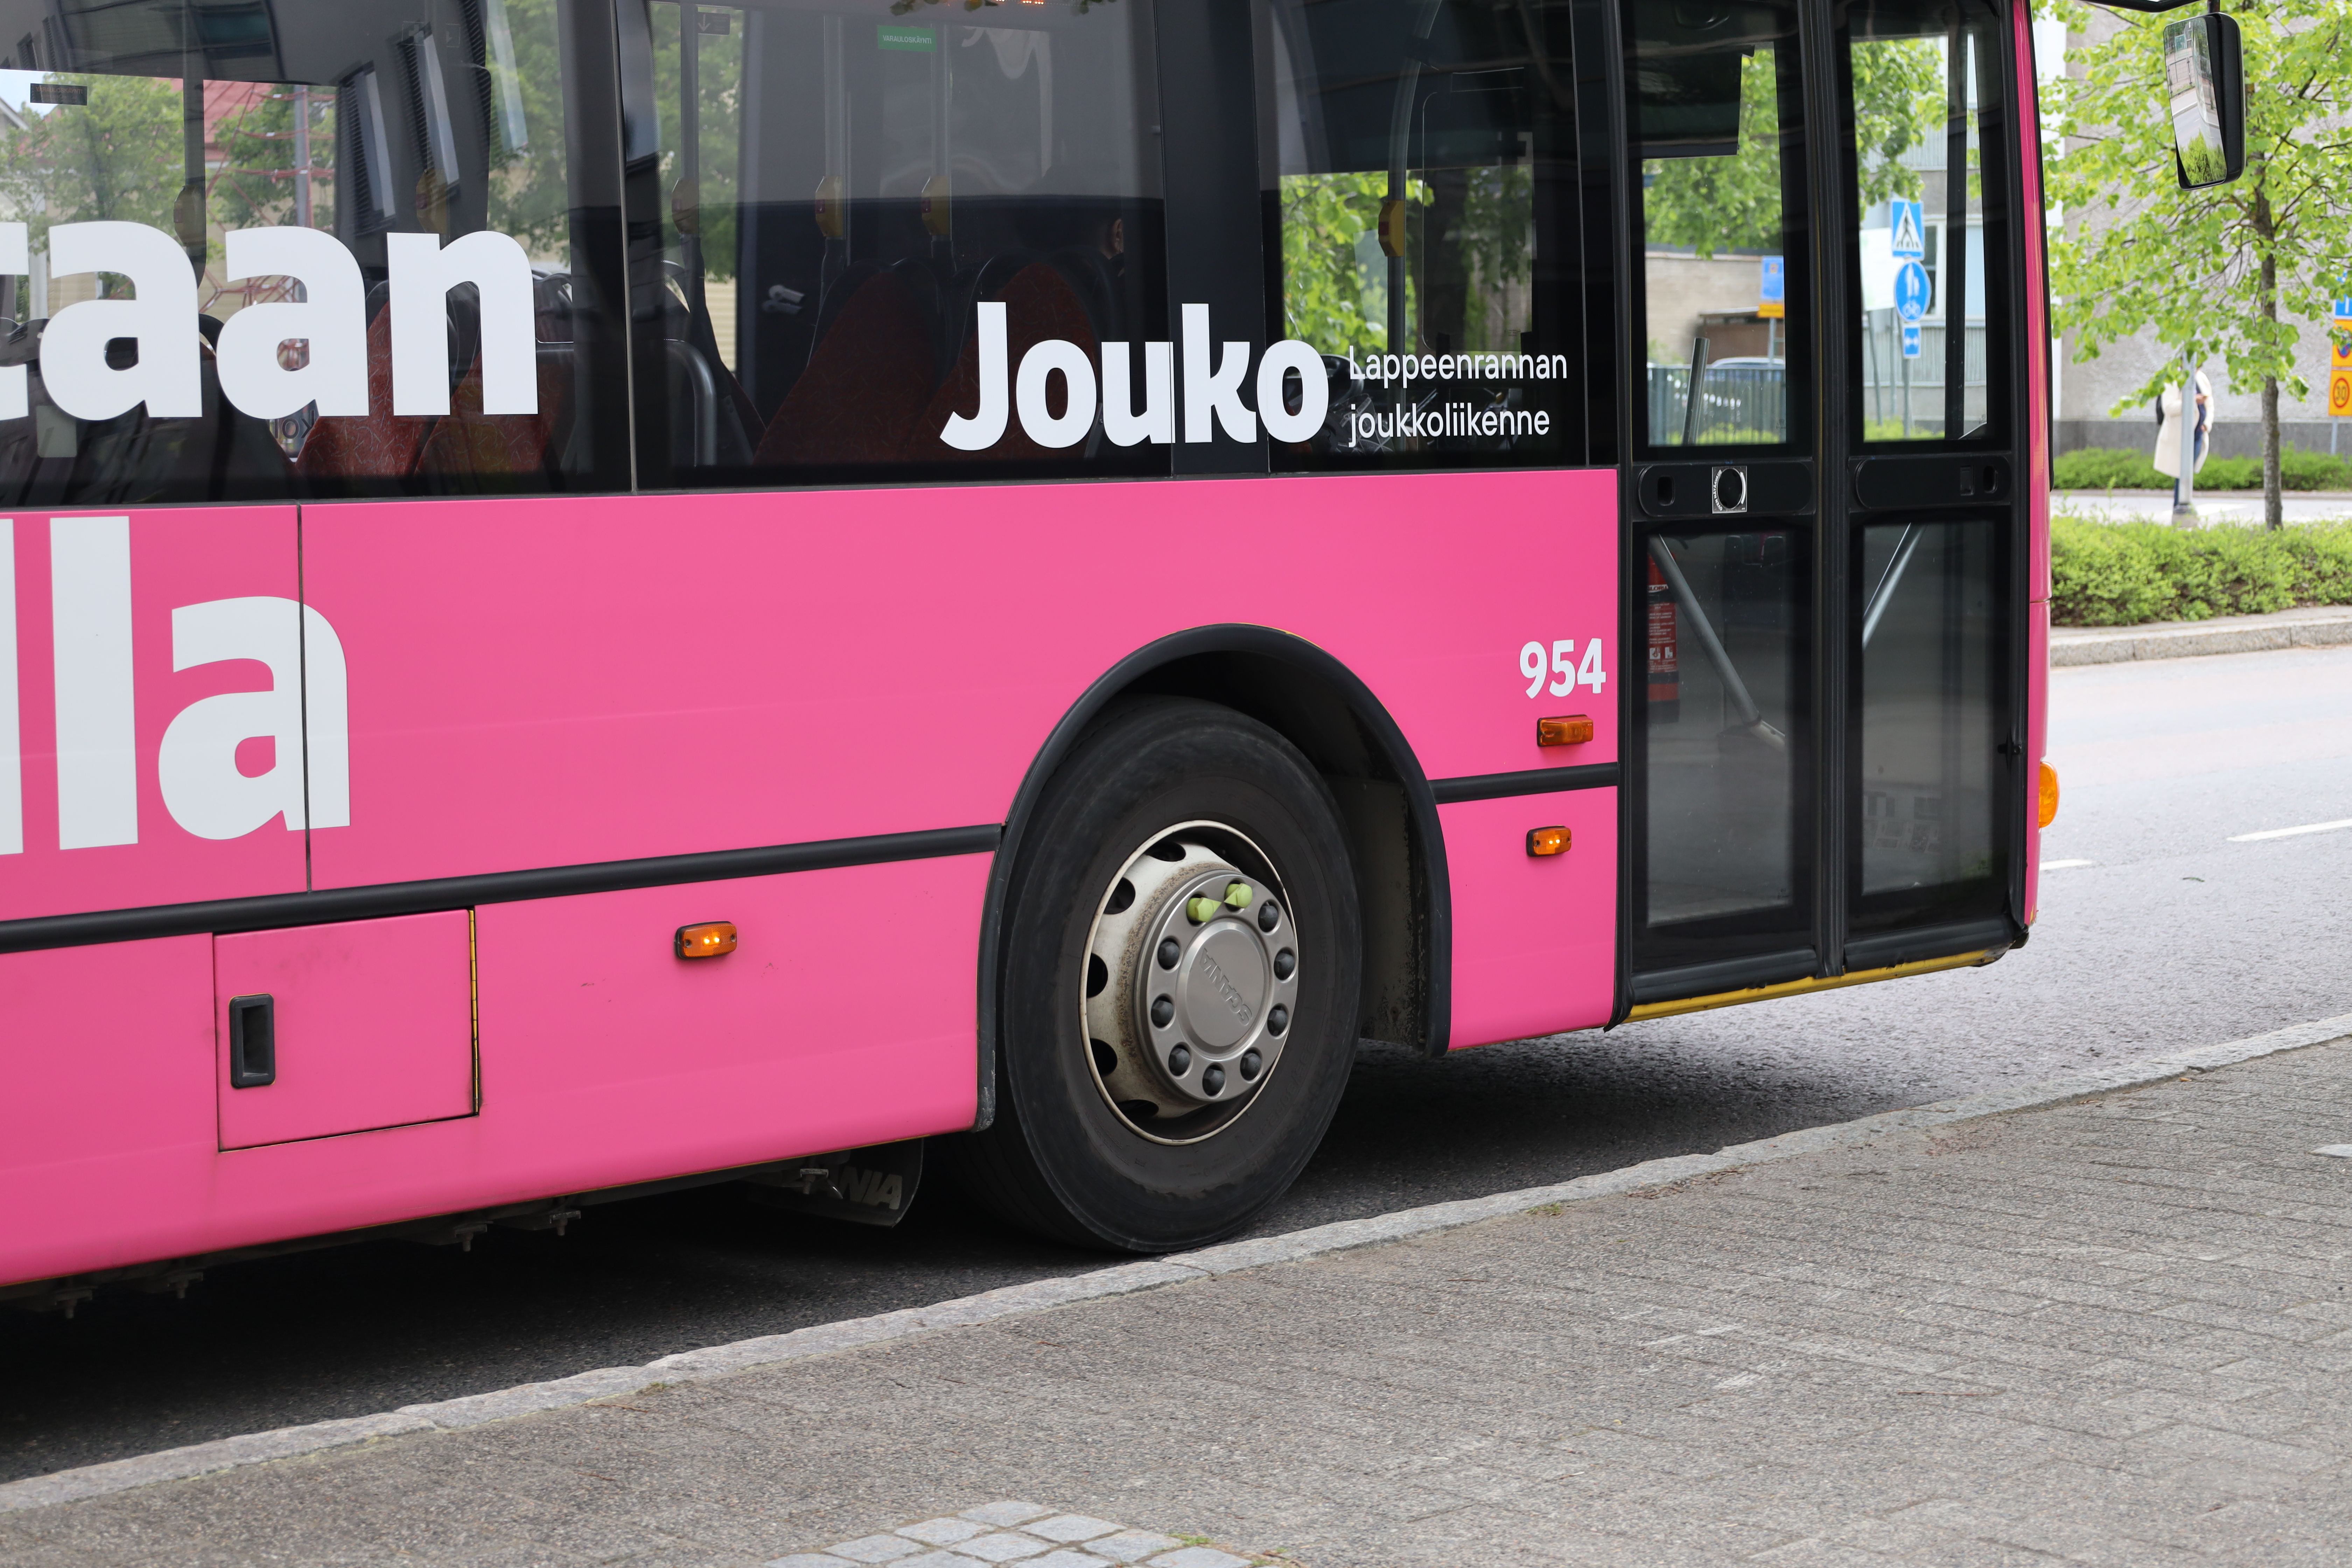 Pinkin Jouko-bussin sivusta bussin etuosaa, etupyörä, etuovi, teippauksessa lukee ”Jouko Lappeenrannan joukkoliikenne”